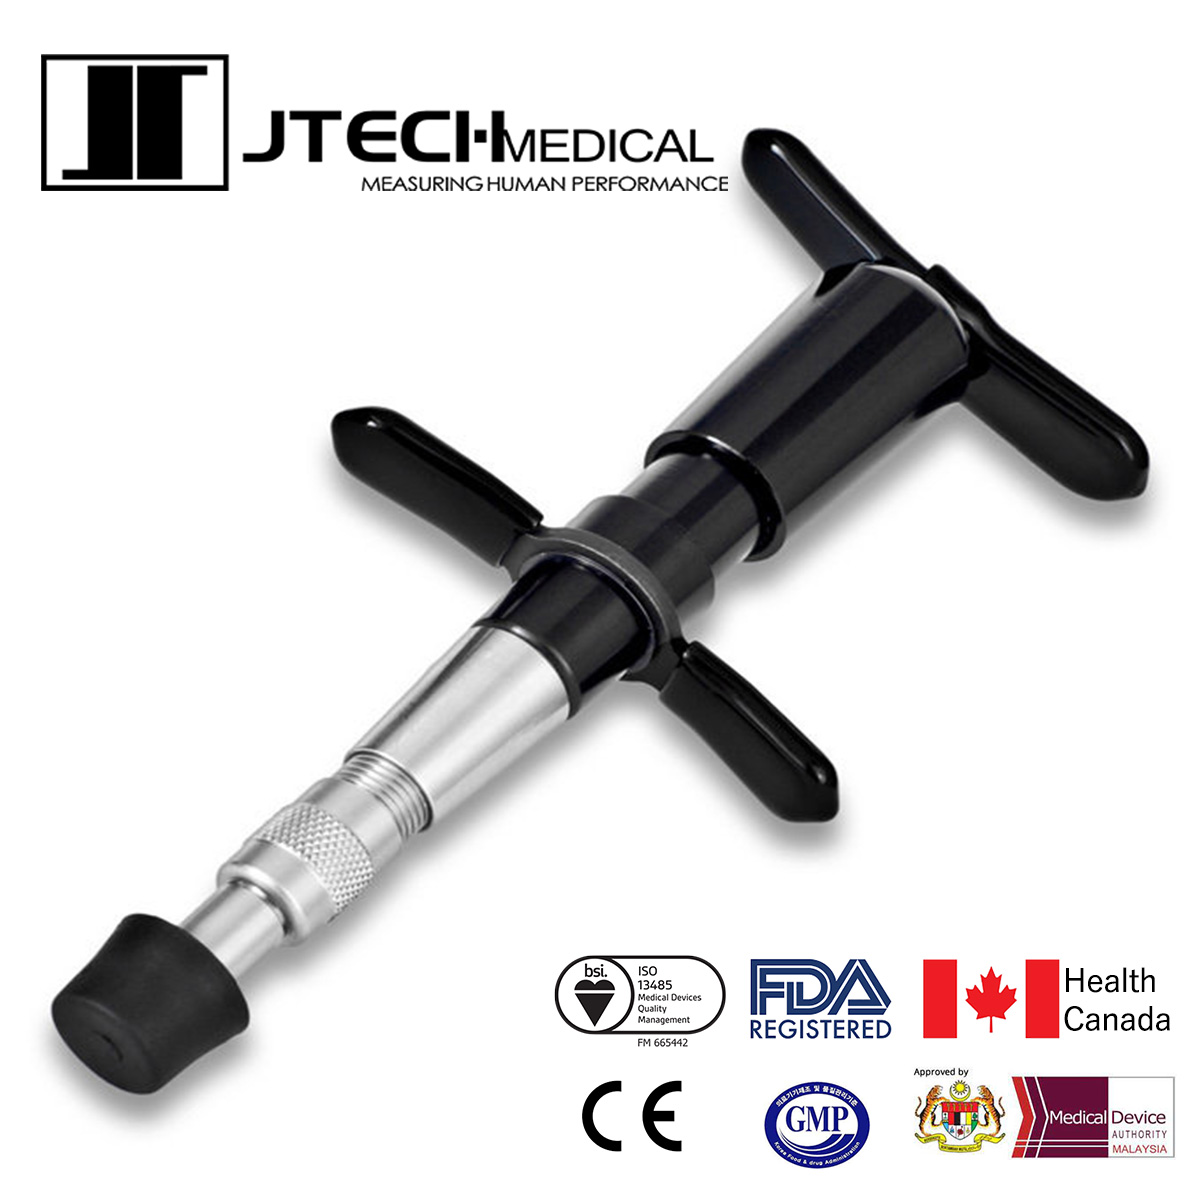 J-tech Medical アクティベーター アクチベーター カイロプラティックアジャスティングツール カイロプラクティック J-Tech CAT Chiropractic Adjusting Tool スタンダードモデル 国内正規品画像